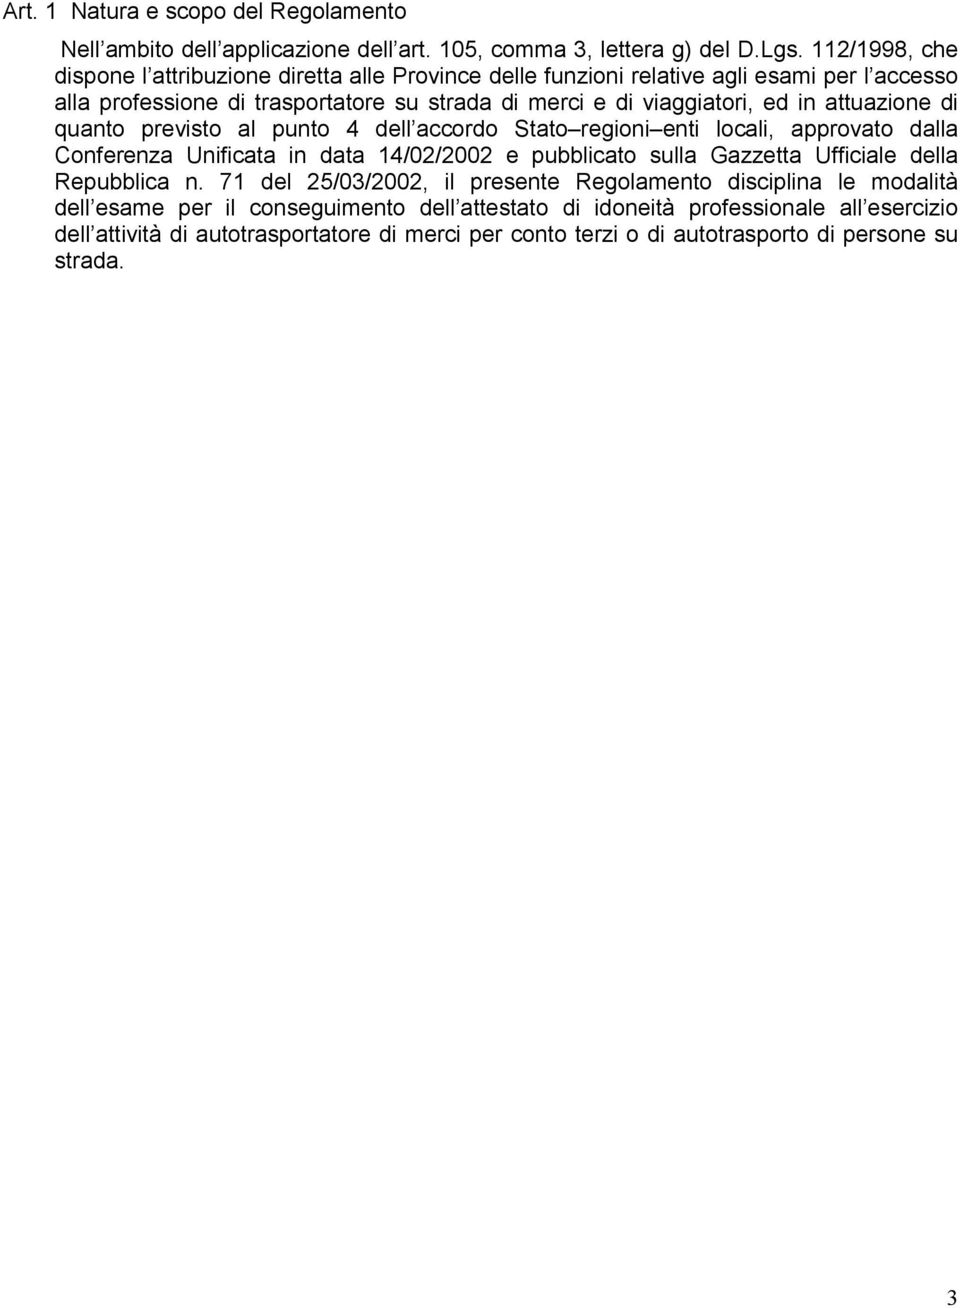 attuazione di quanto previsto al punto 4 dell accordo Stato regioni enti locali, approvato dalla Conferenza Unificata in data 14/02/2002 e pubblicato sulla Gazzetta Ufficiale della